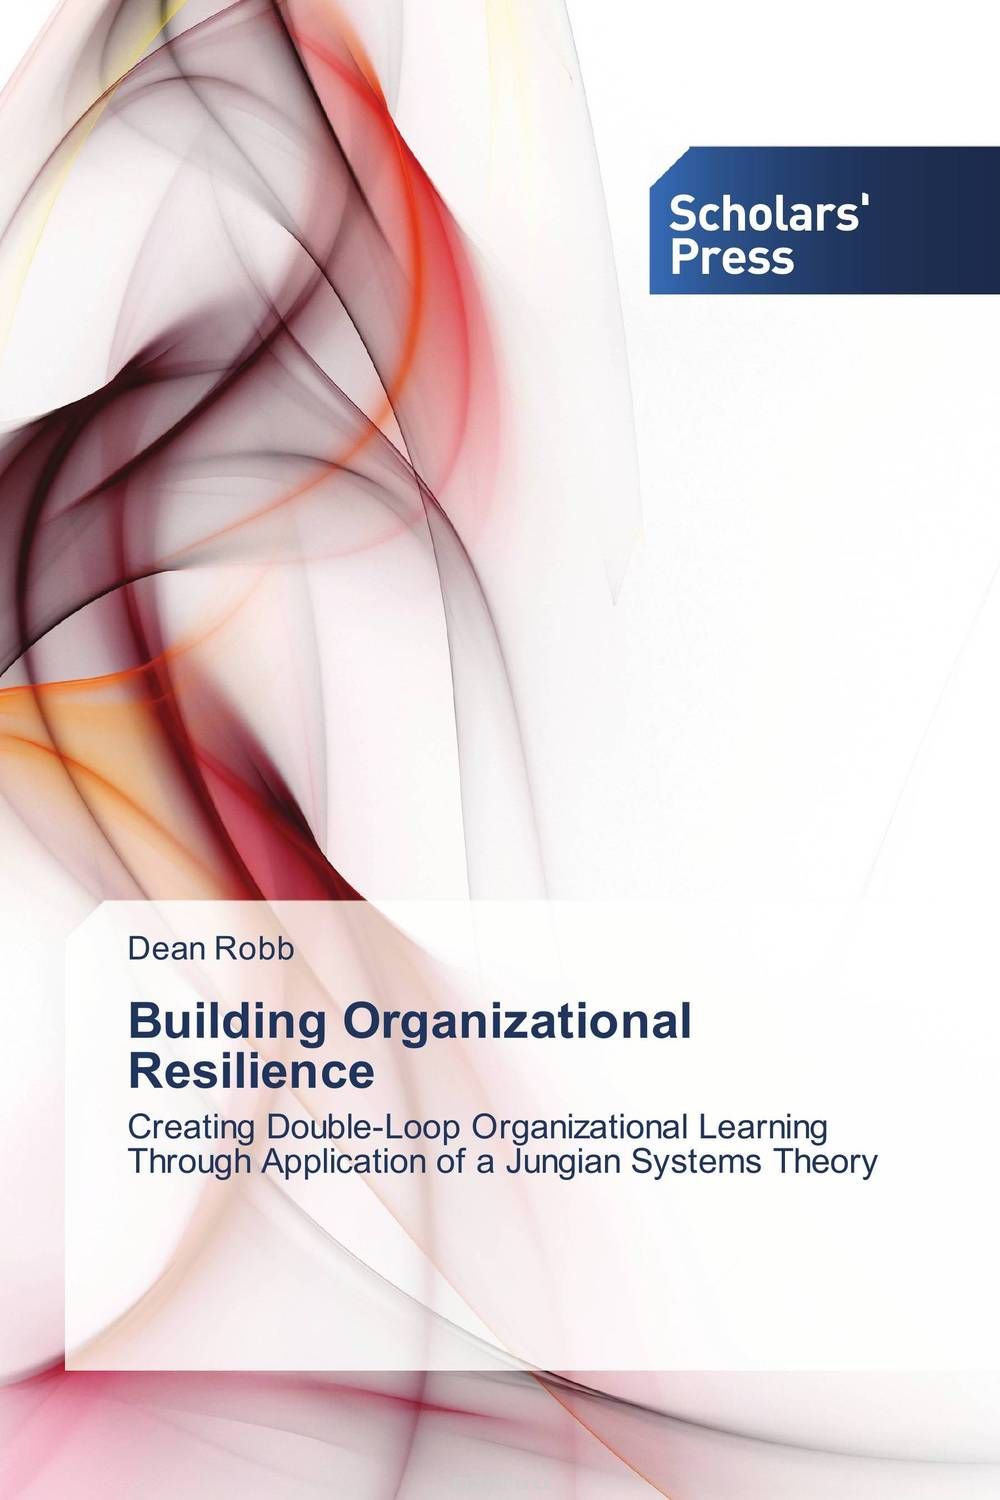 Скачать книгу "Building Organizational Resilience"